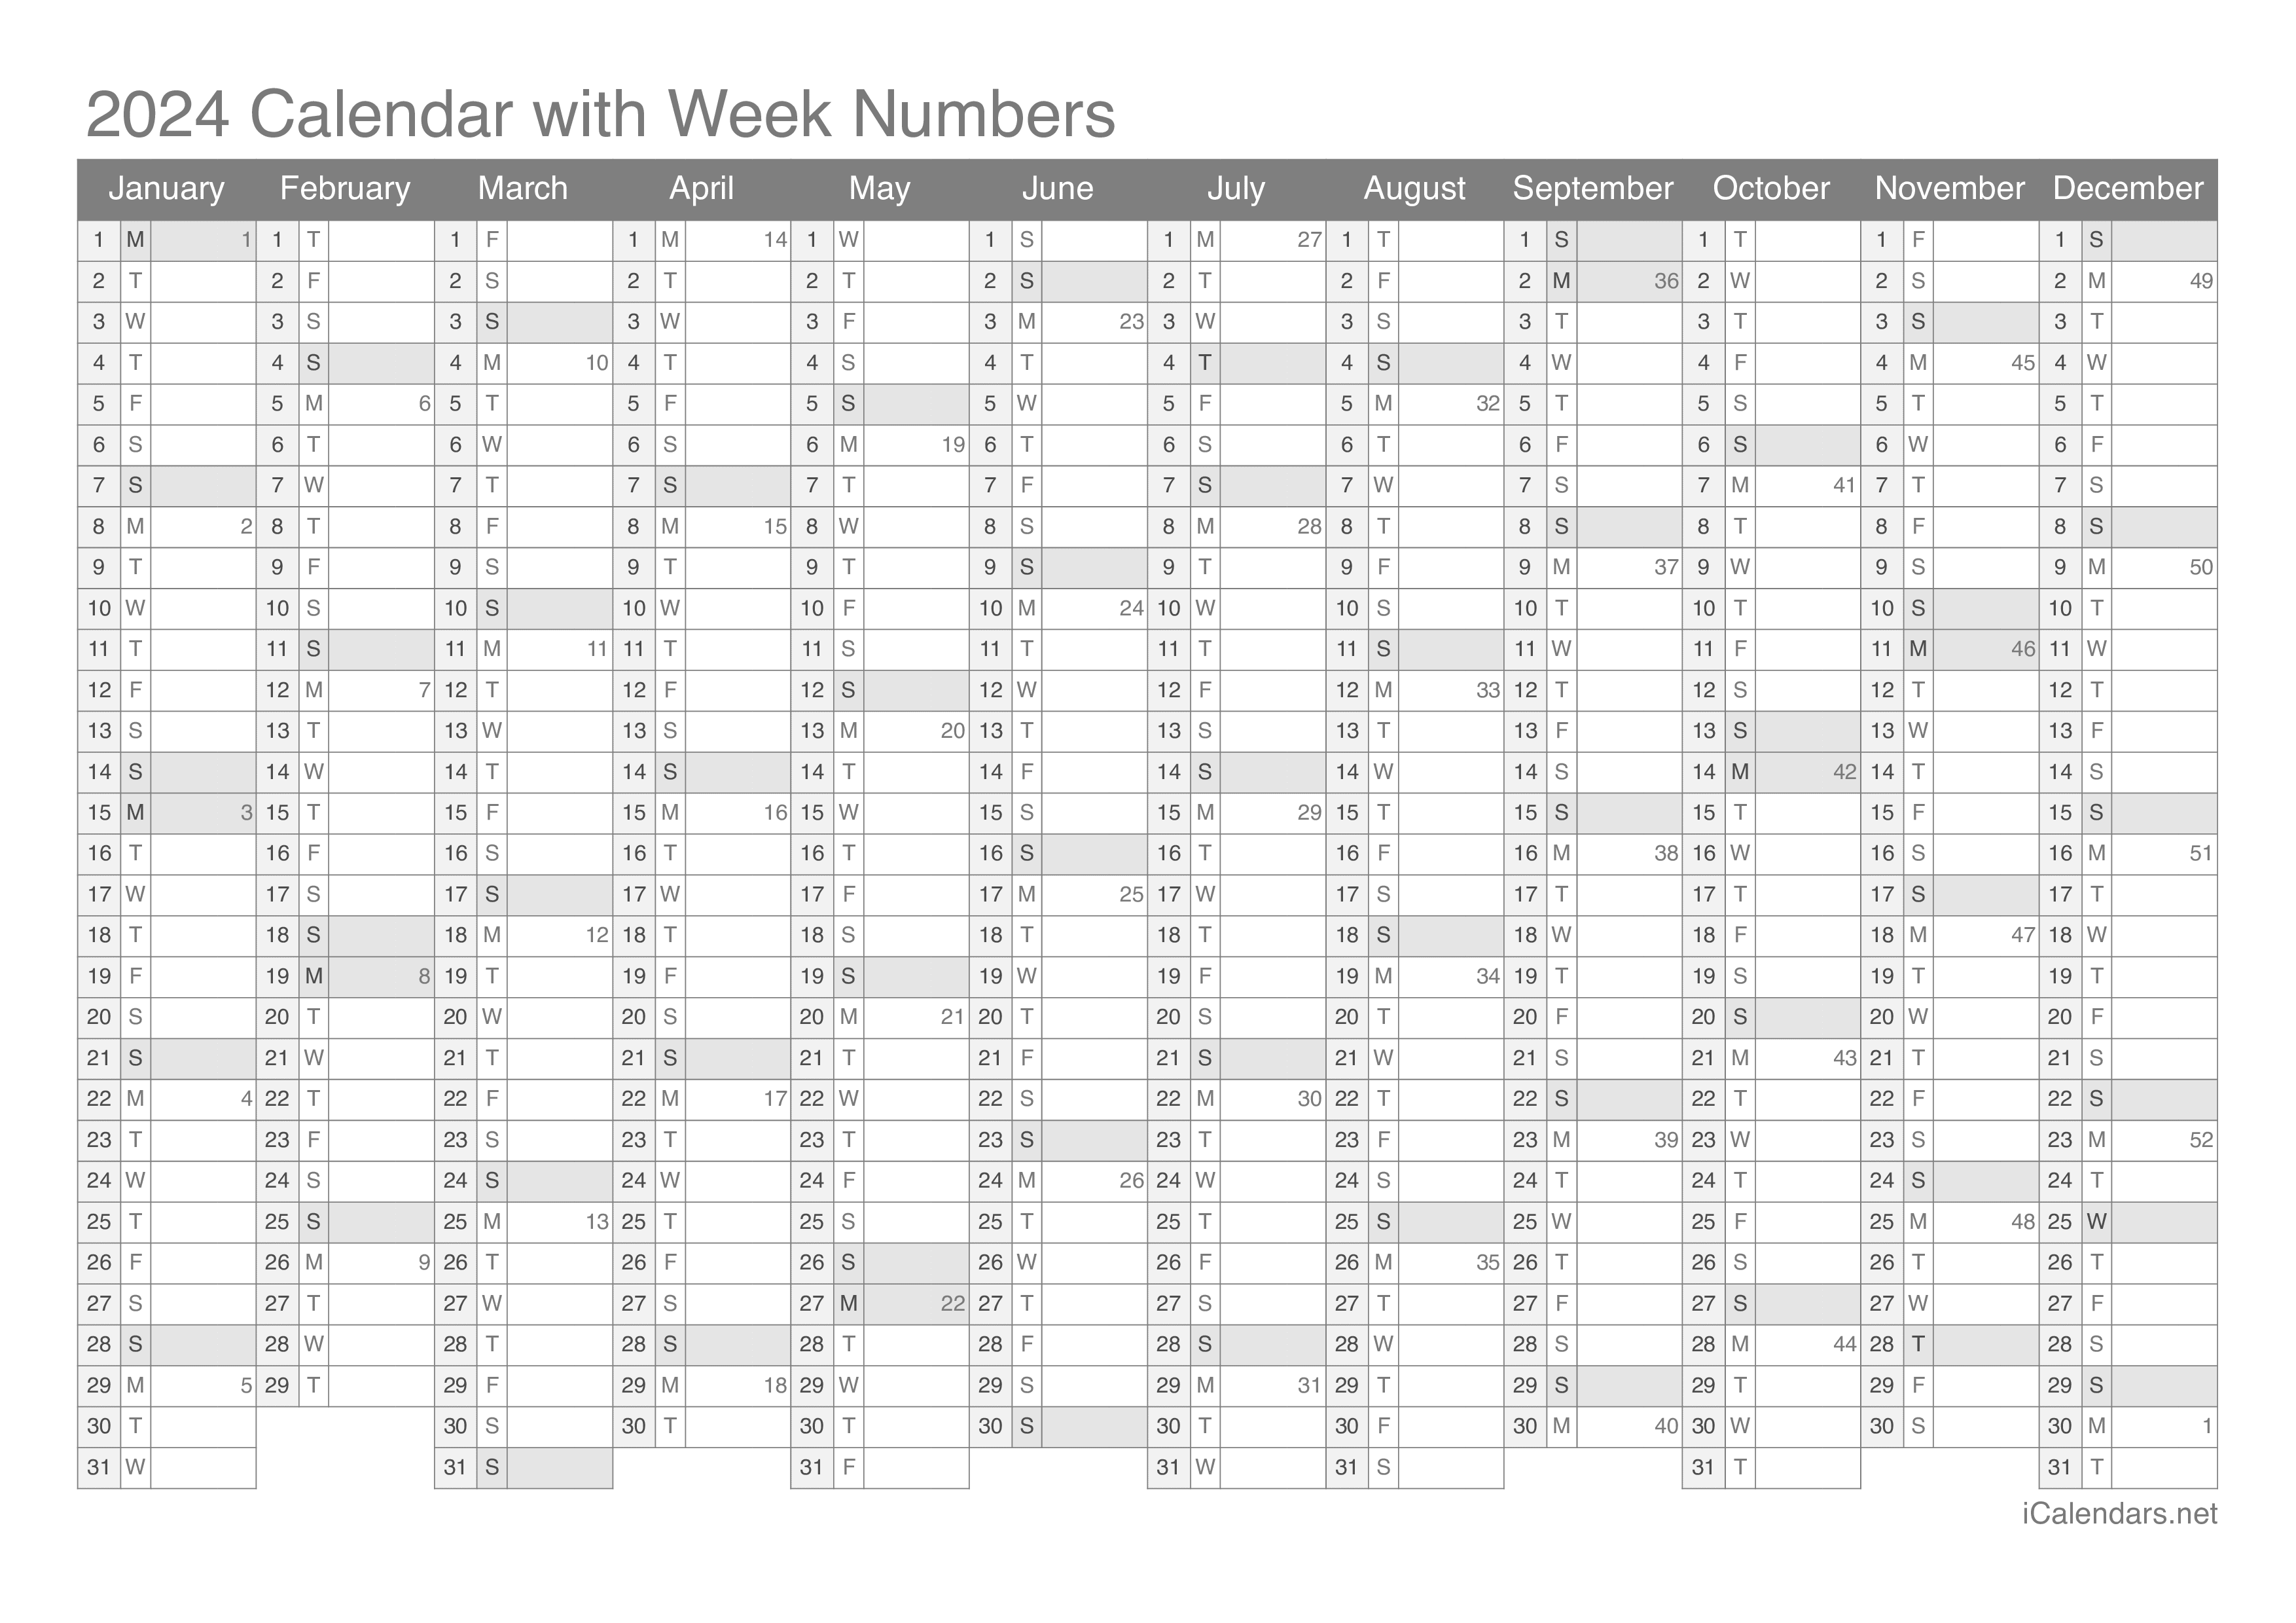 2024 Calendar with week numbers